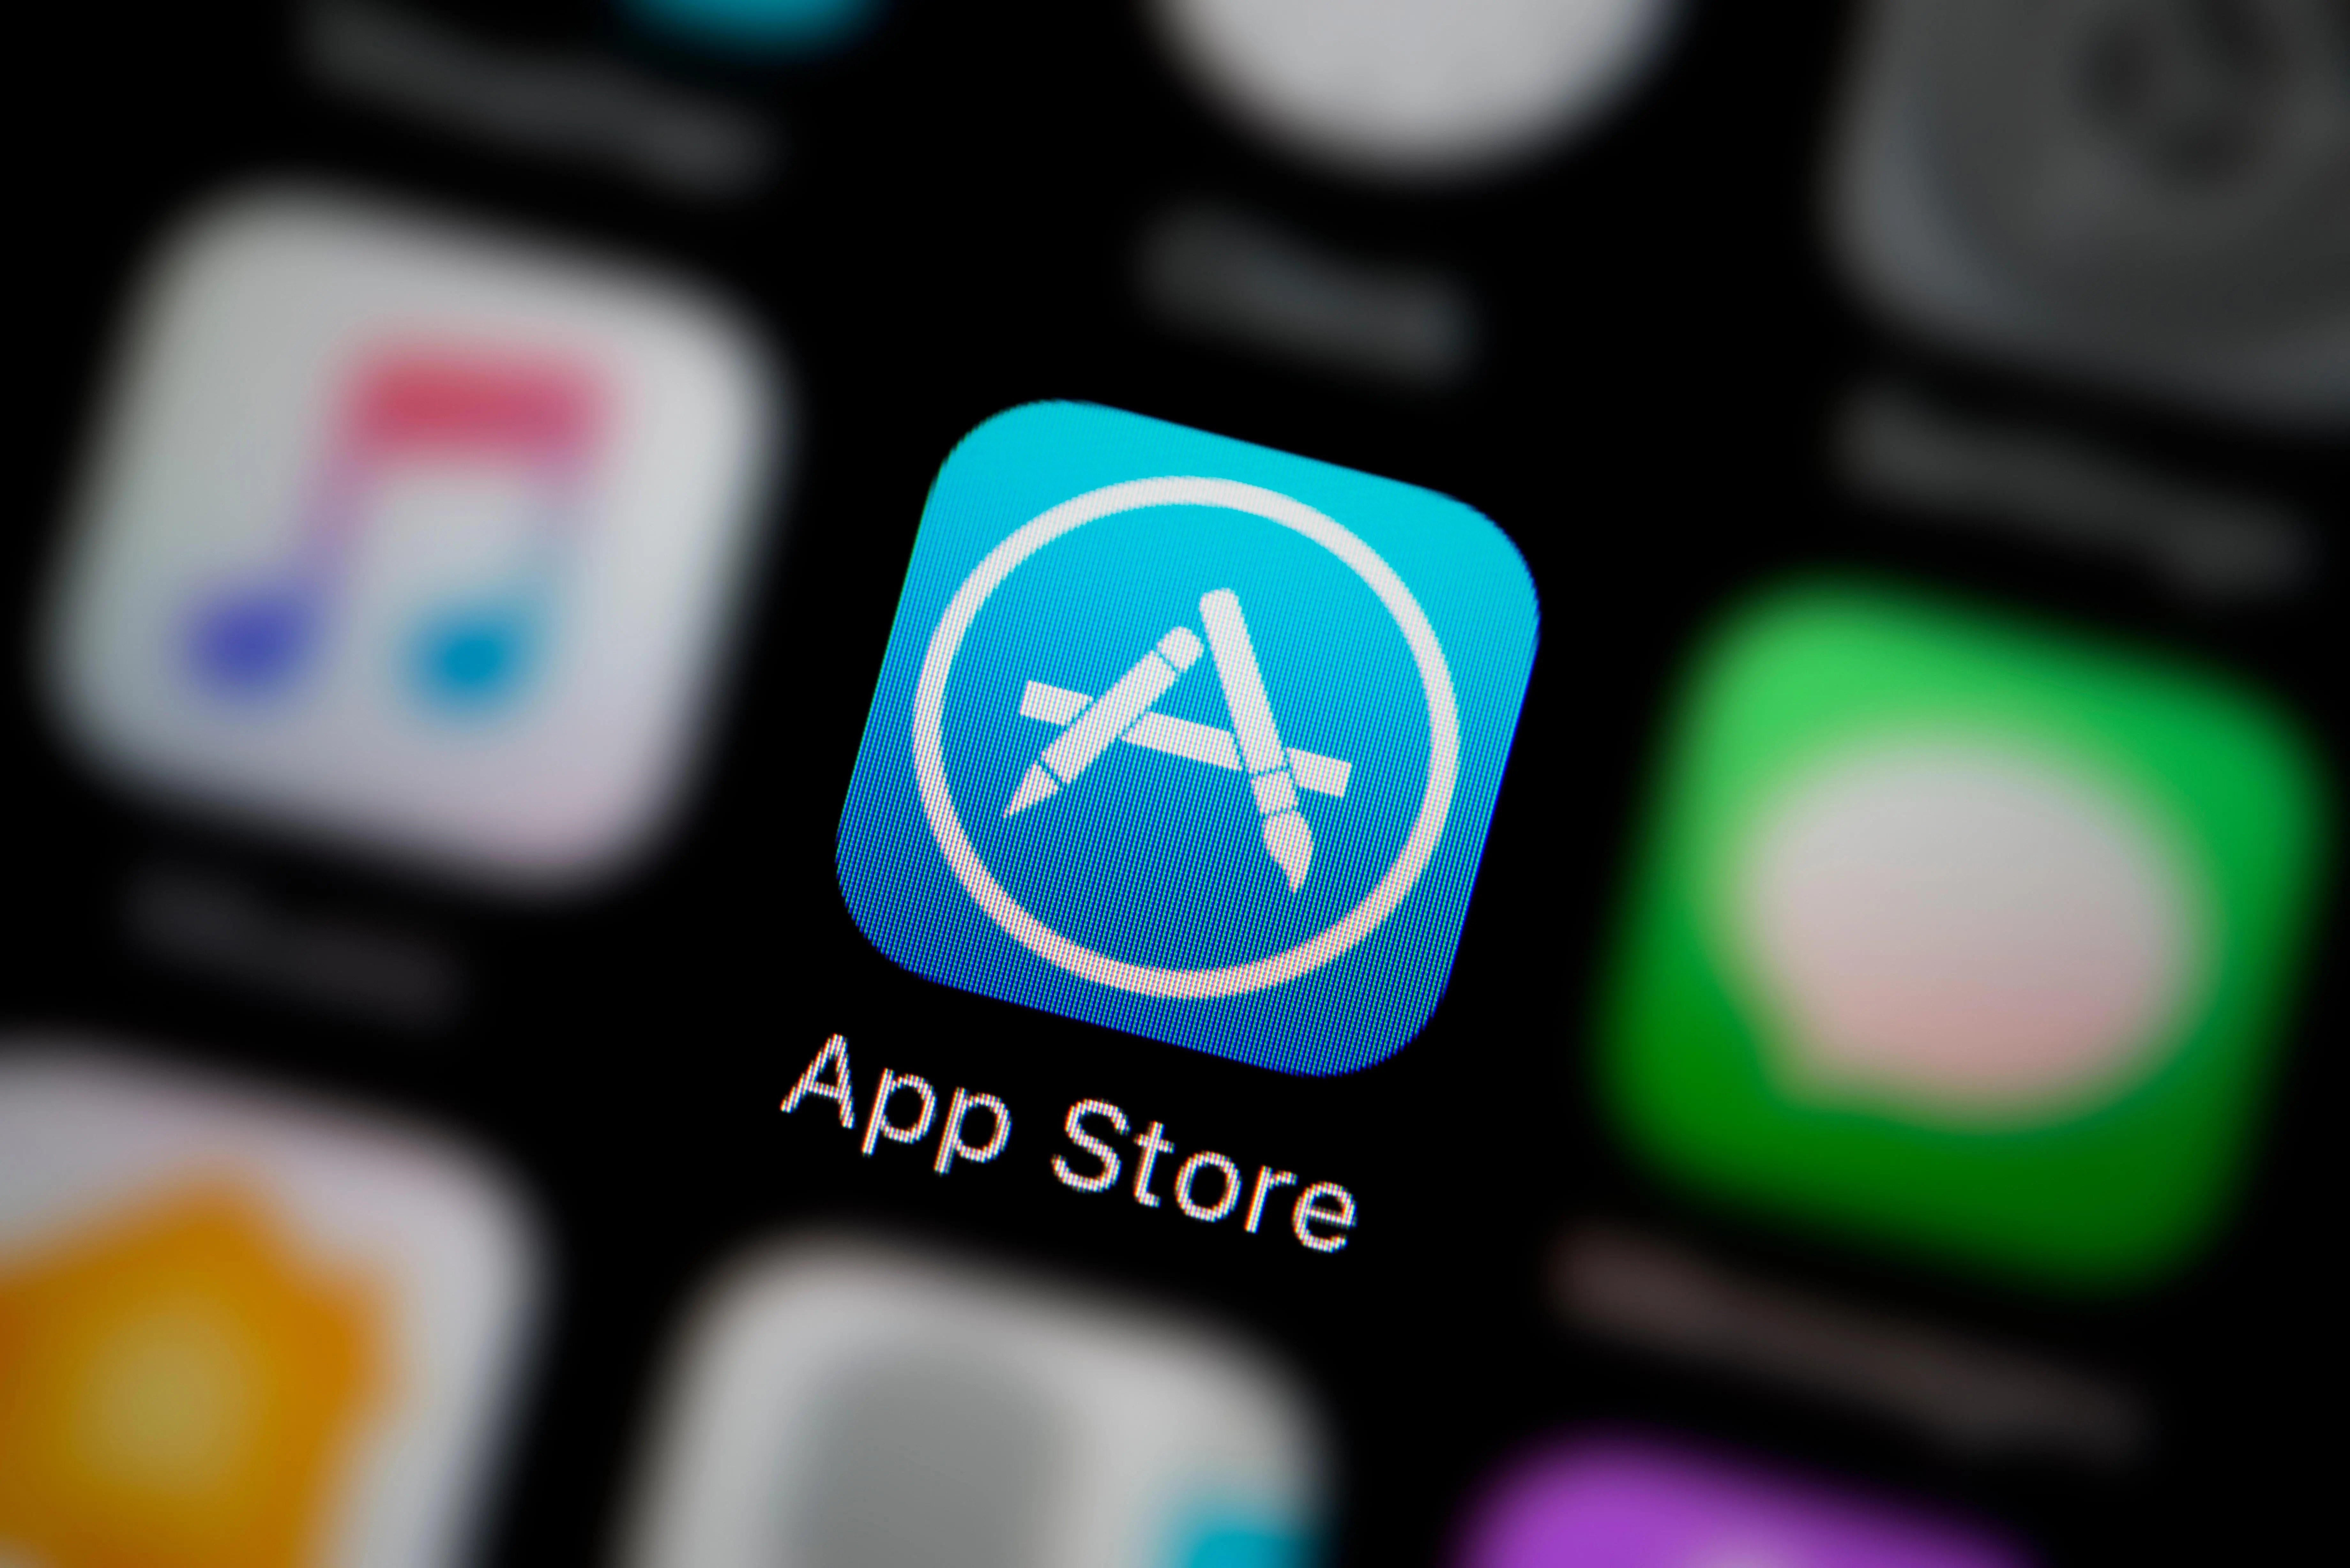 Apple rüşvet alan App Store çalışanlarını kovdu